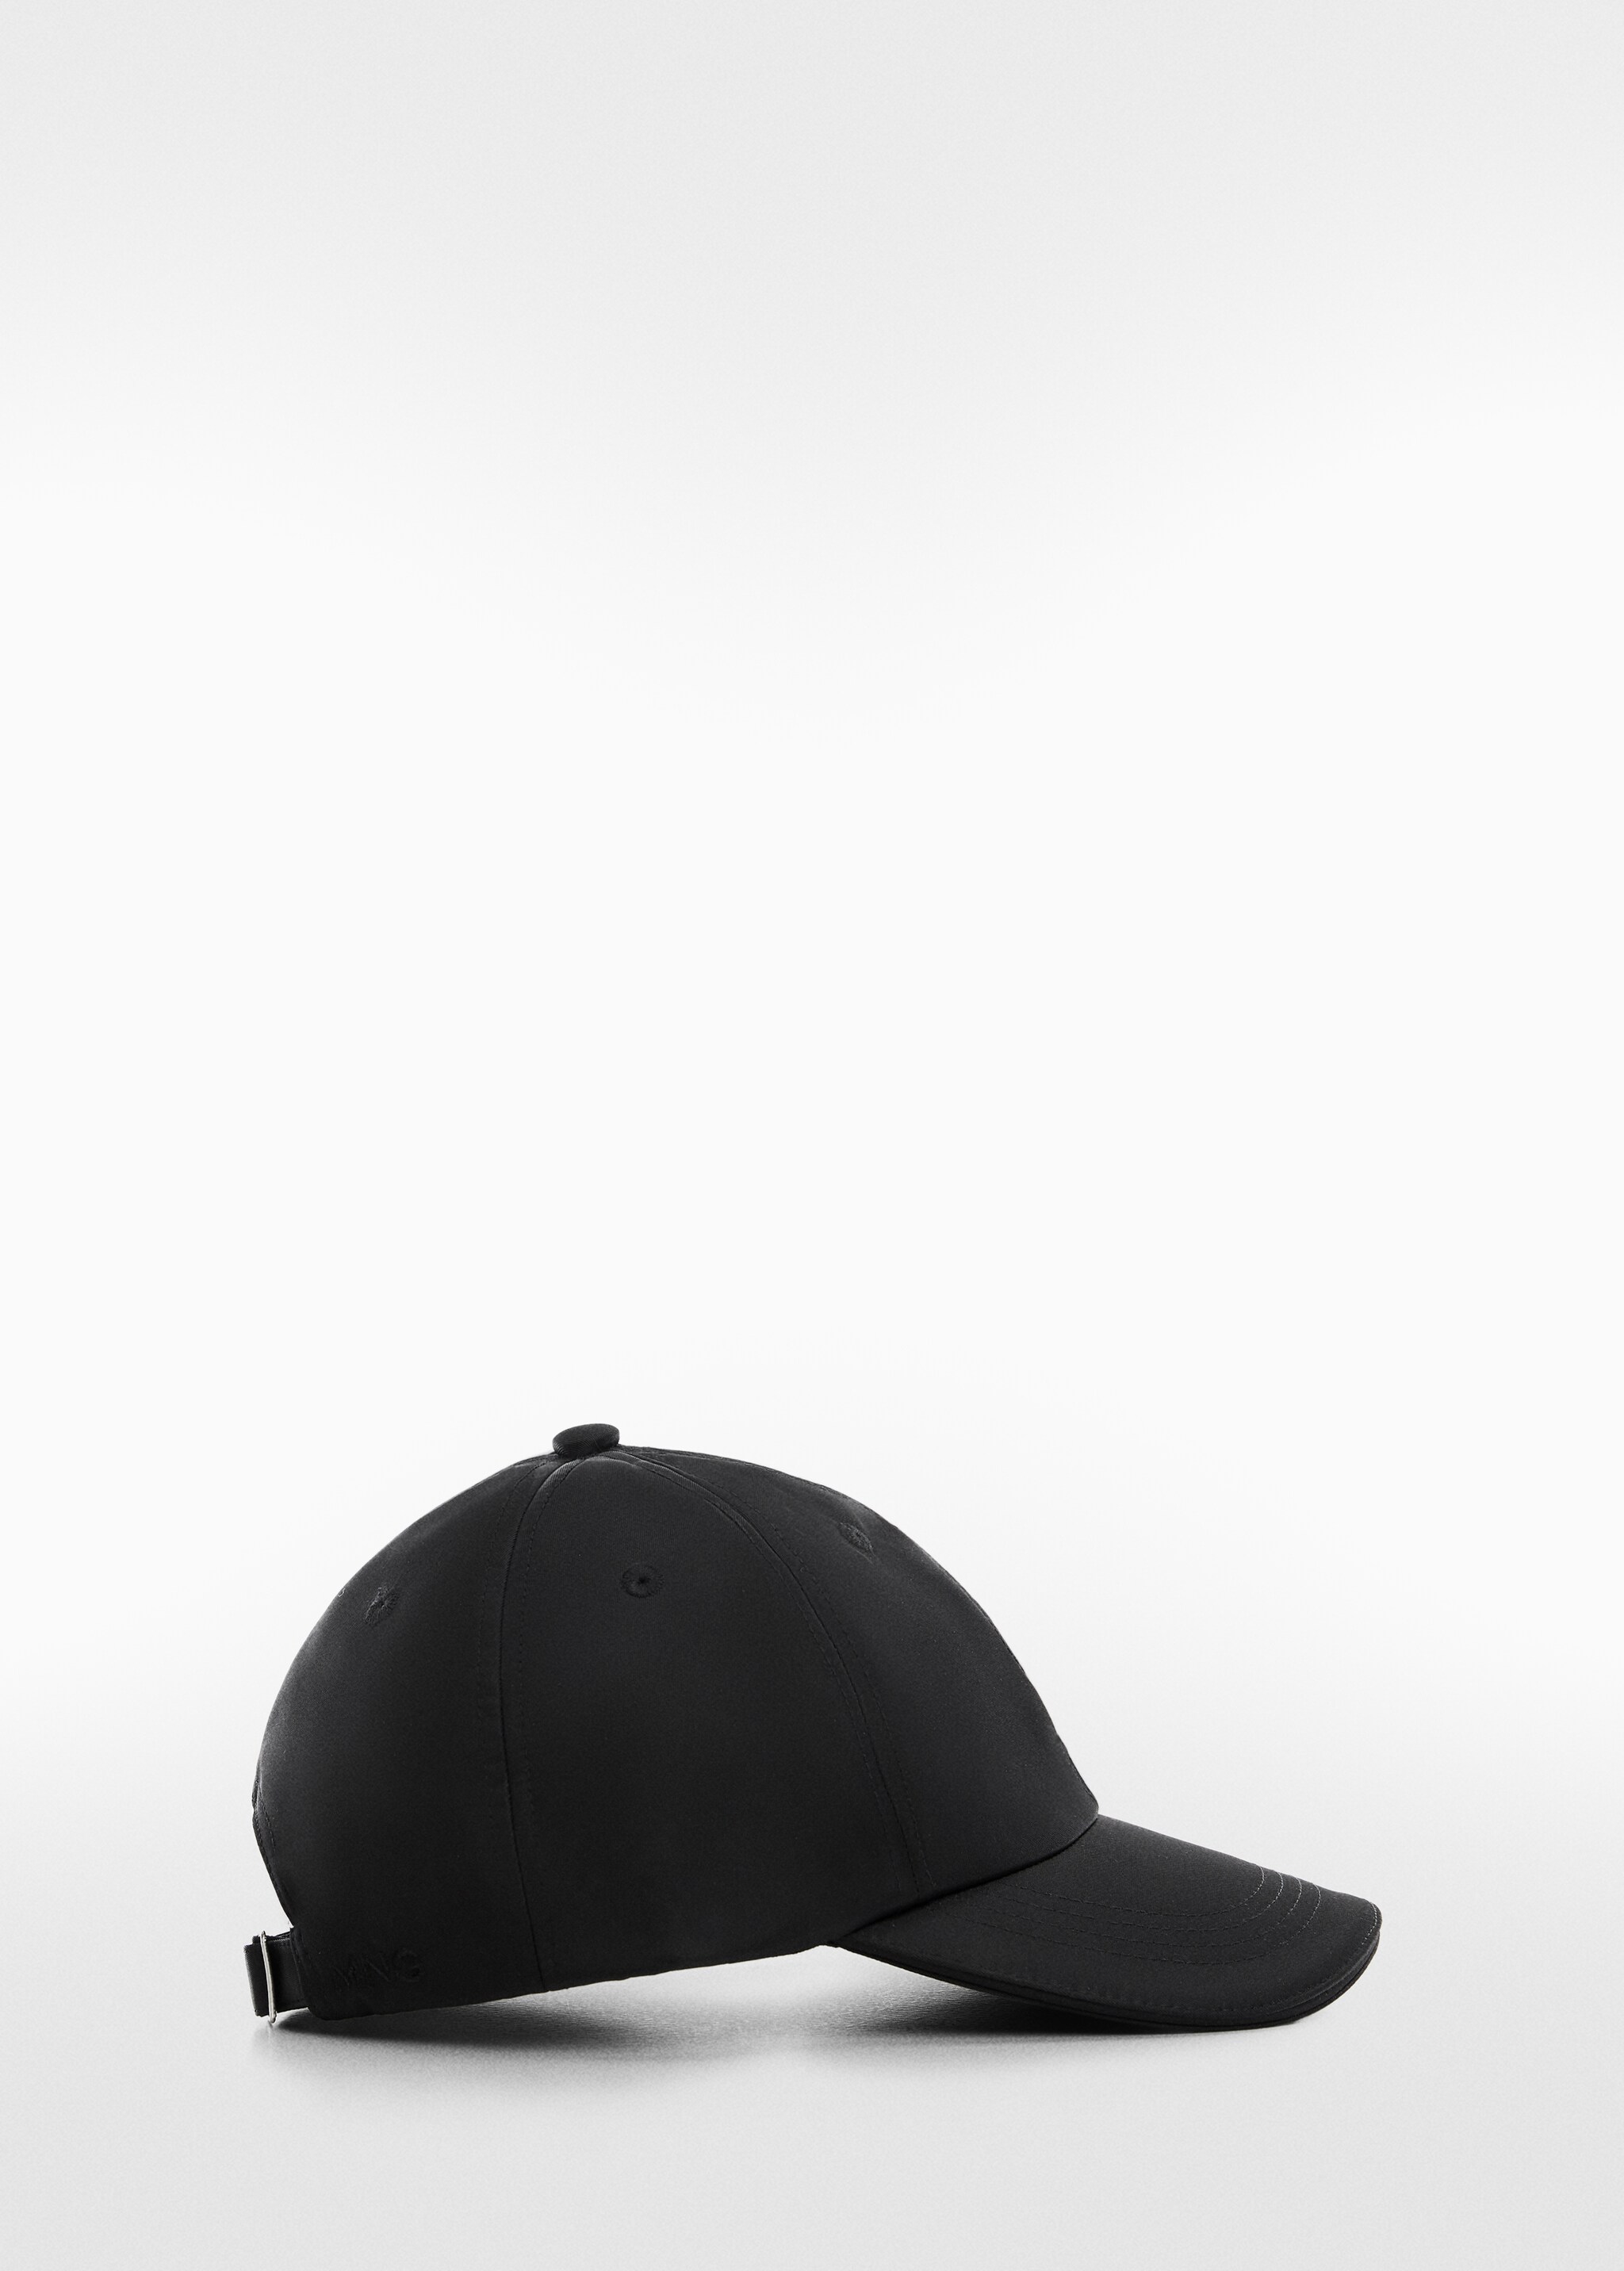 Soft visor cap - Artigo sem modelo